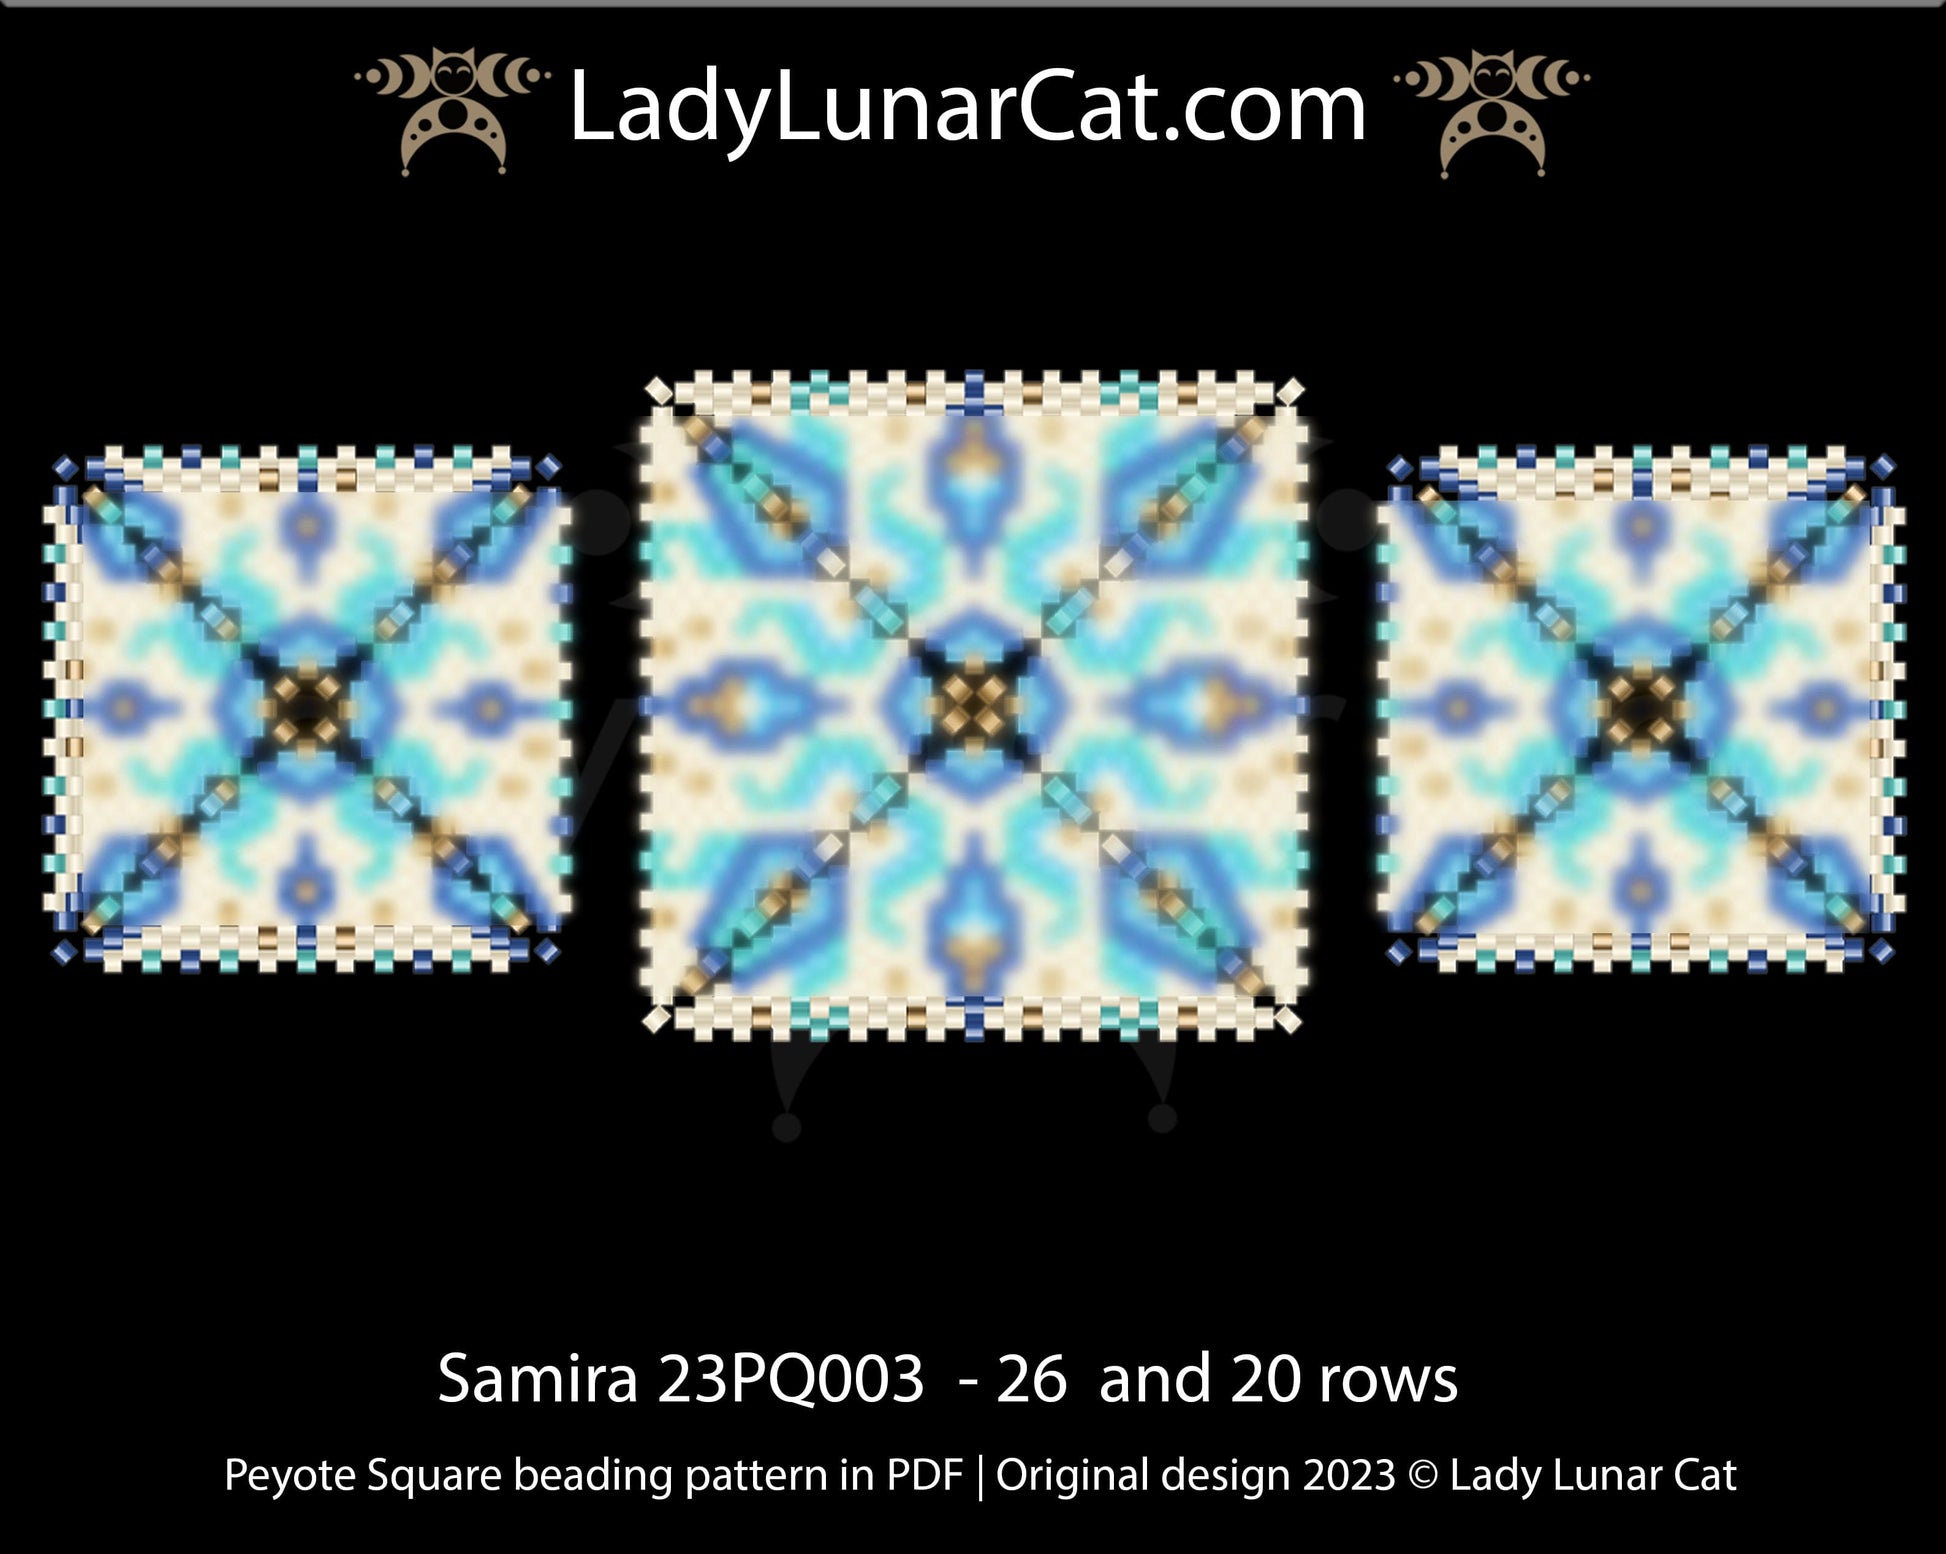 Peyote square pattern for beading Samira 23PQ003 LadyLunarCat